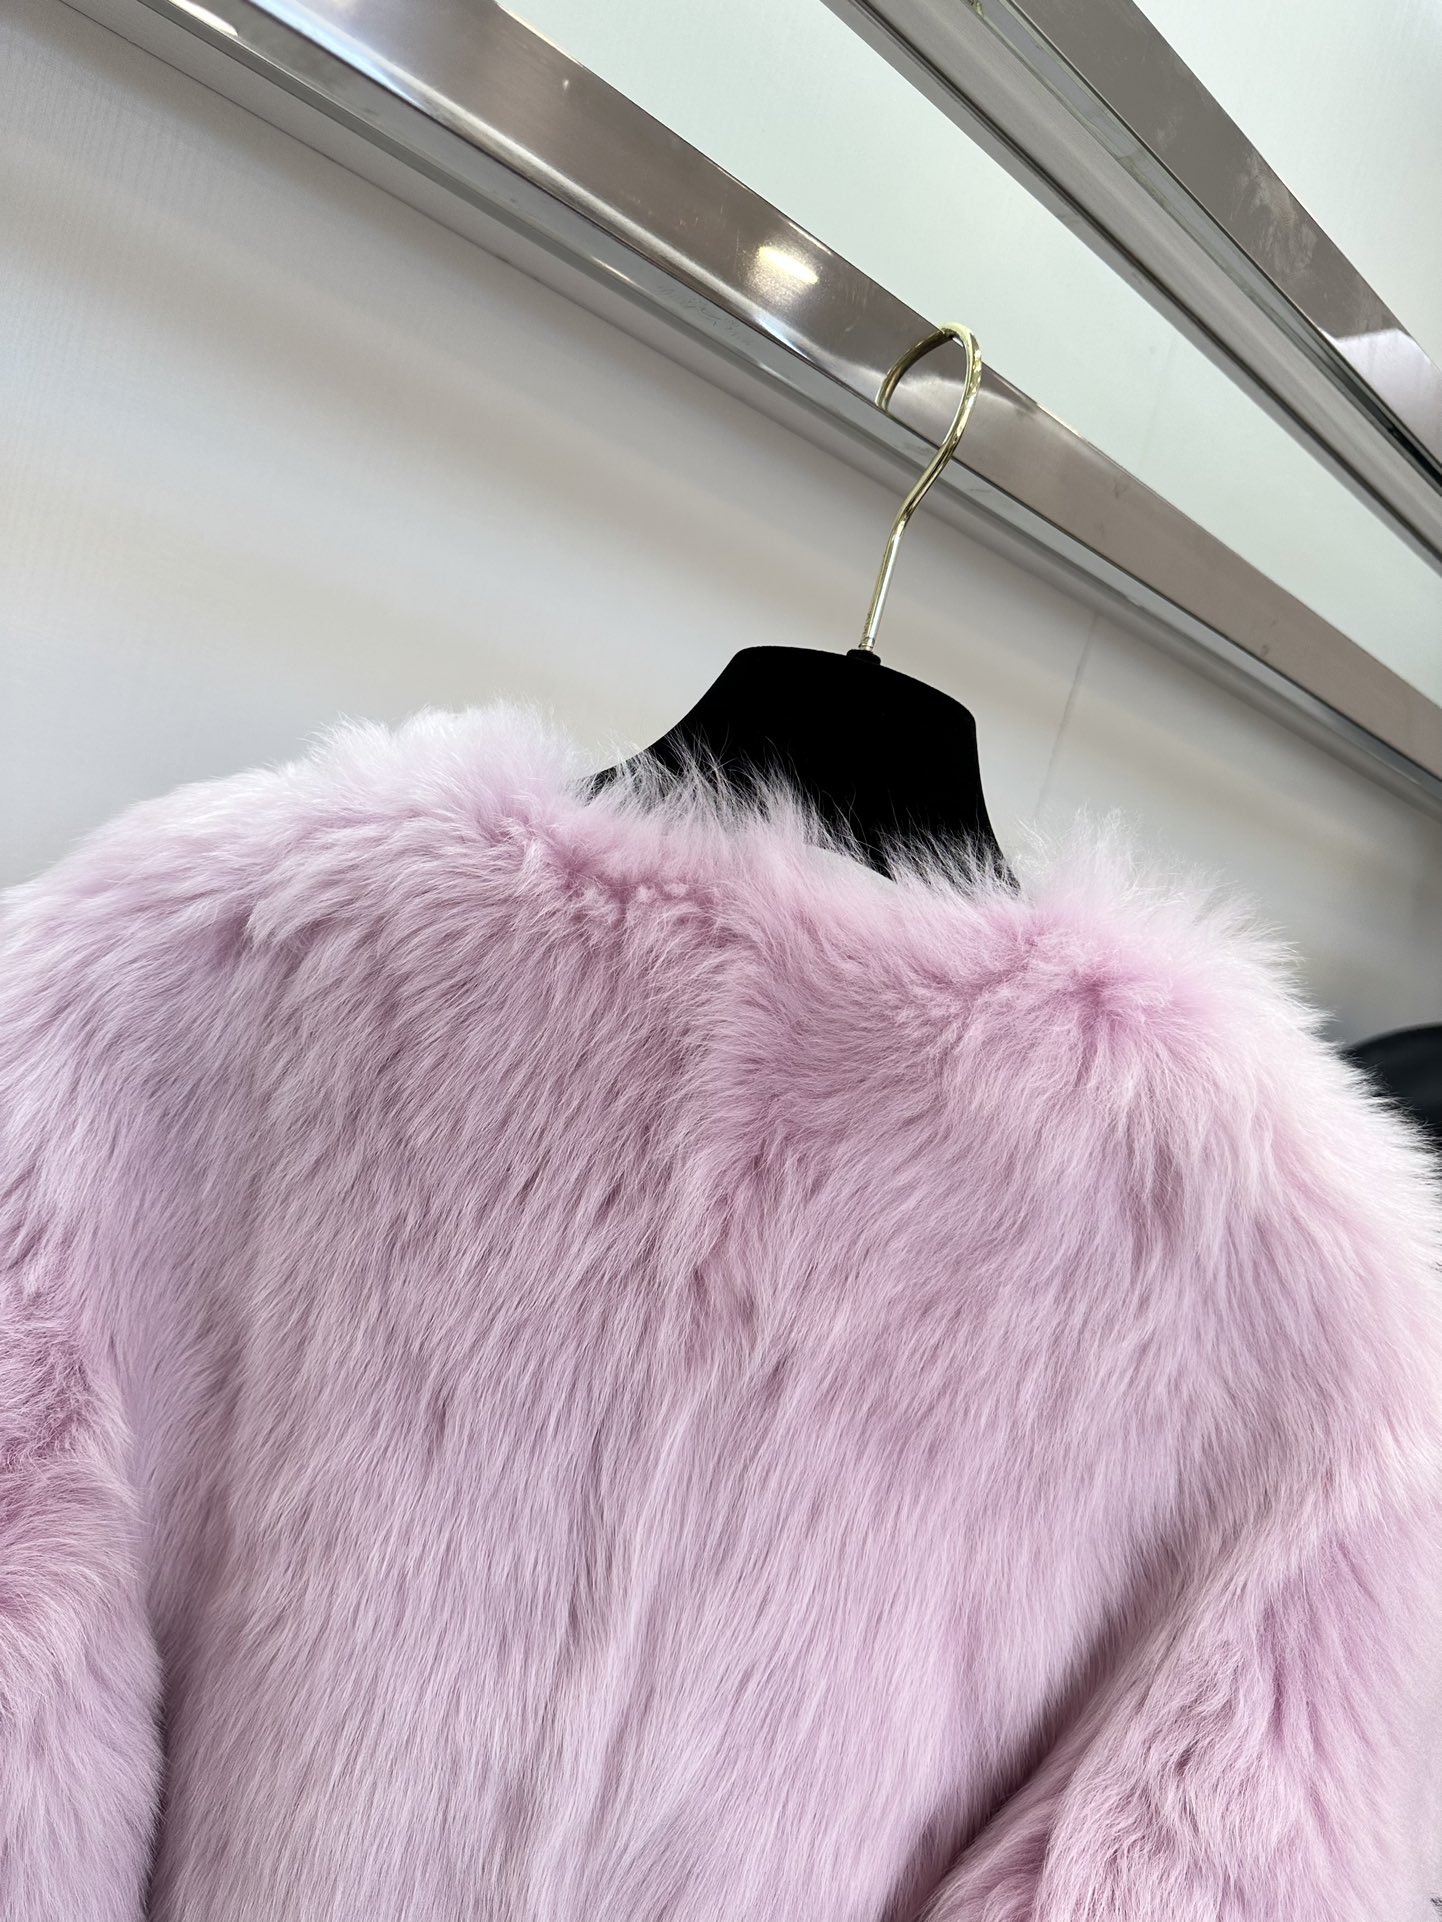 セリーヌ ジャンパー偽物 鮮やかな色 イタリア製 高級品 もこもこ 暖かい ファッション レディース 3色可選 ピンク_3